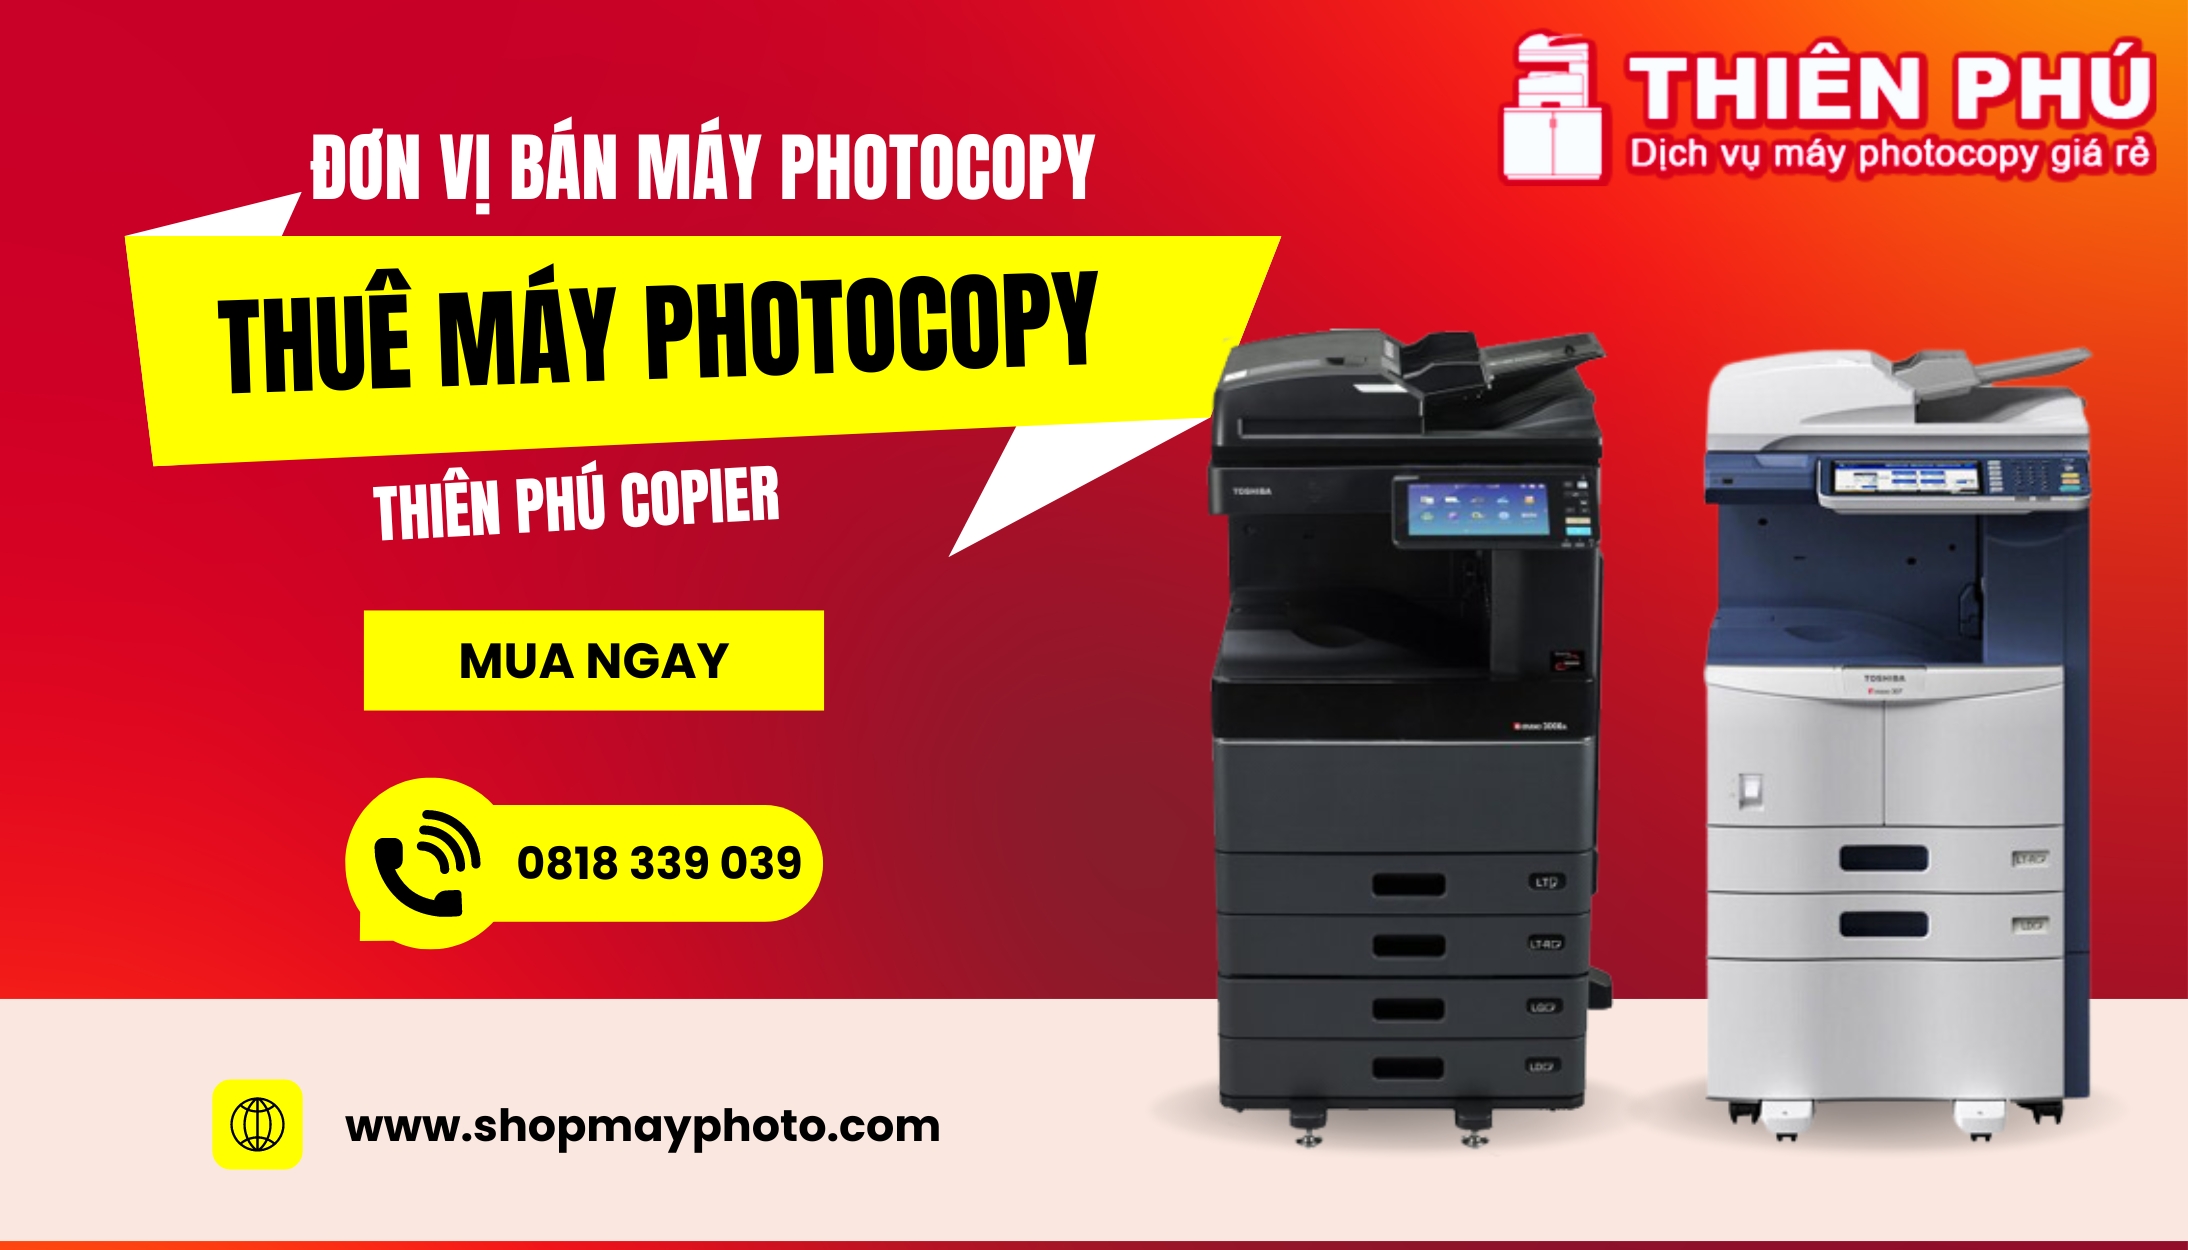 Thiên Phú Copier - Địa chỉ bán máy photocopy Toshiba chính hãng